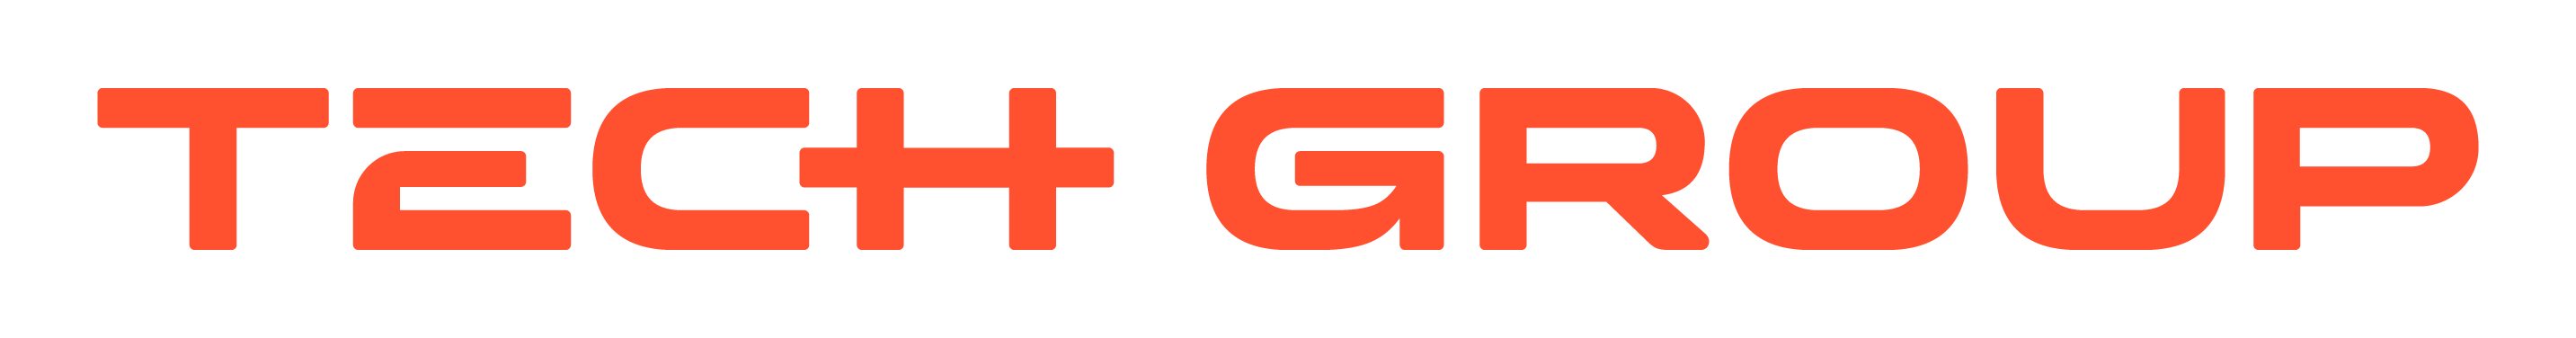 Tech group logo white text orange backround